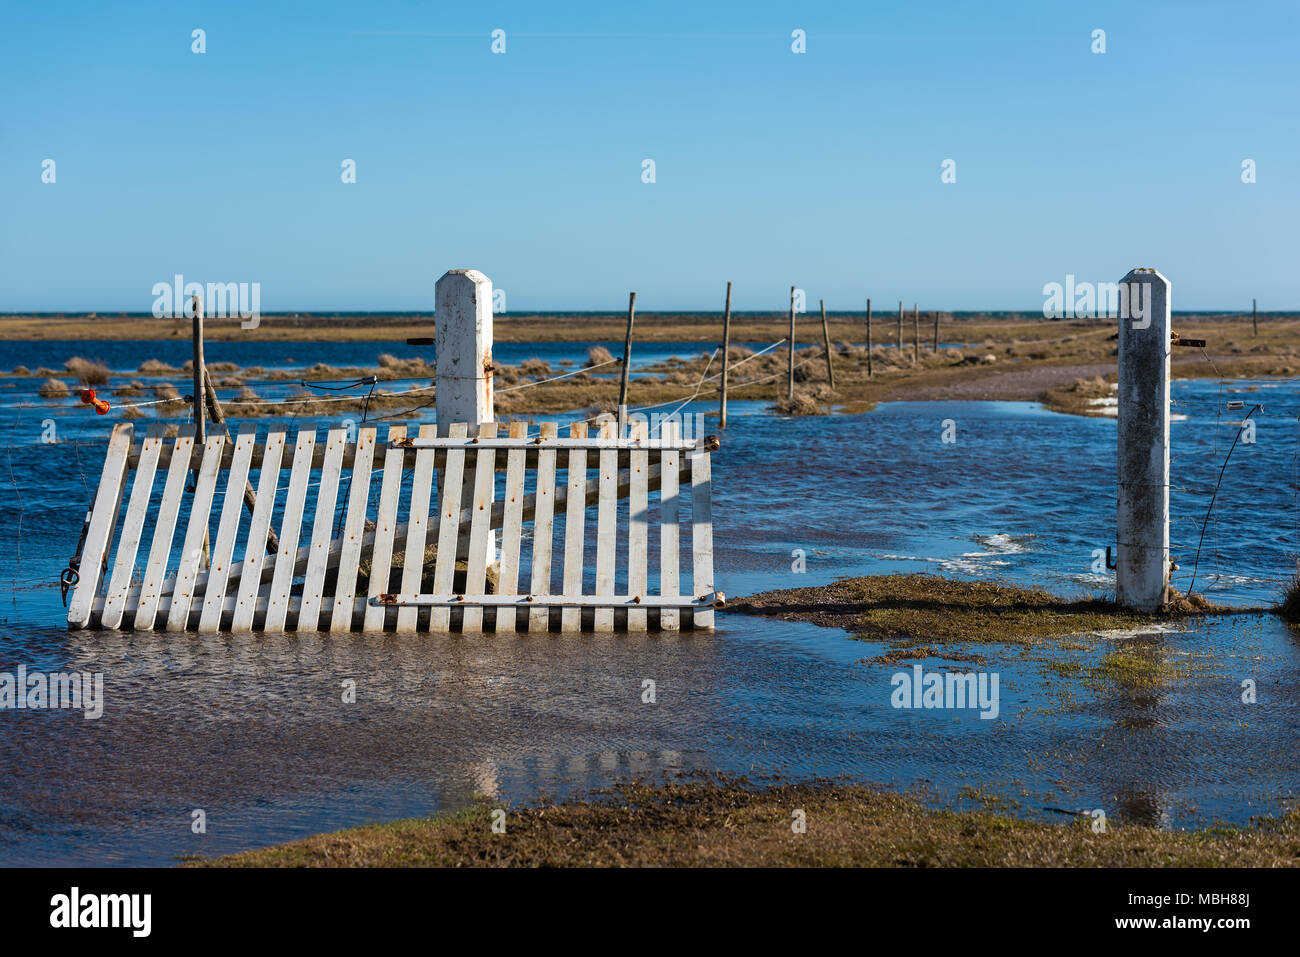 Cancello bianco delle sue cerniere, appoggiata contro una porta post. Percorso inondate lungo una recinzione che conduce verso la costa. Ubicazione Ottenby riserva naturale, svedese Foto Stock